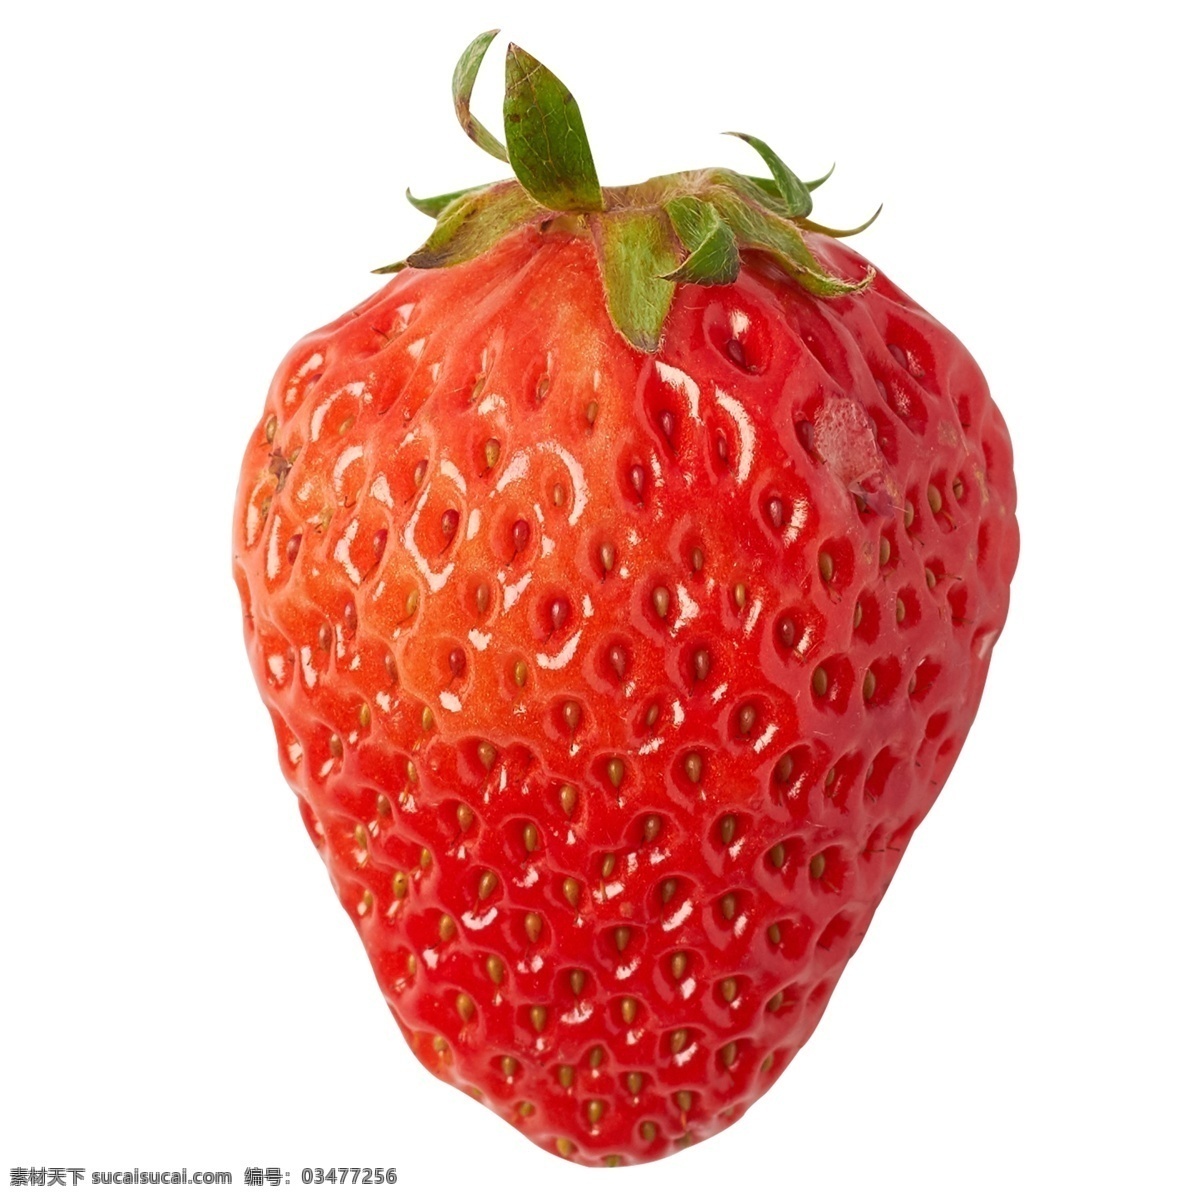 红色草莓 草莓 水果 红色